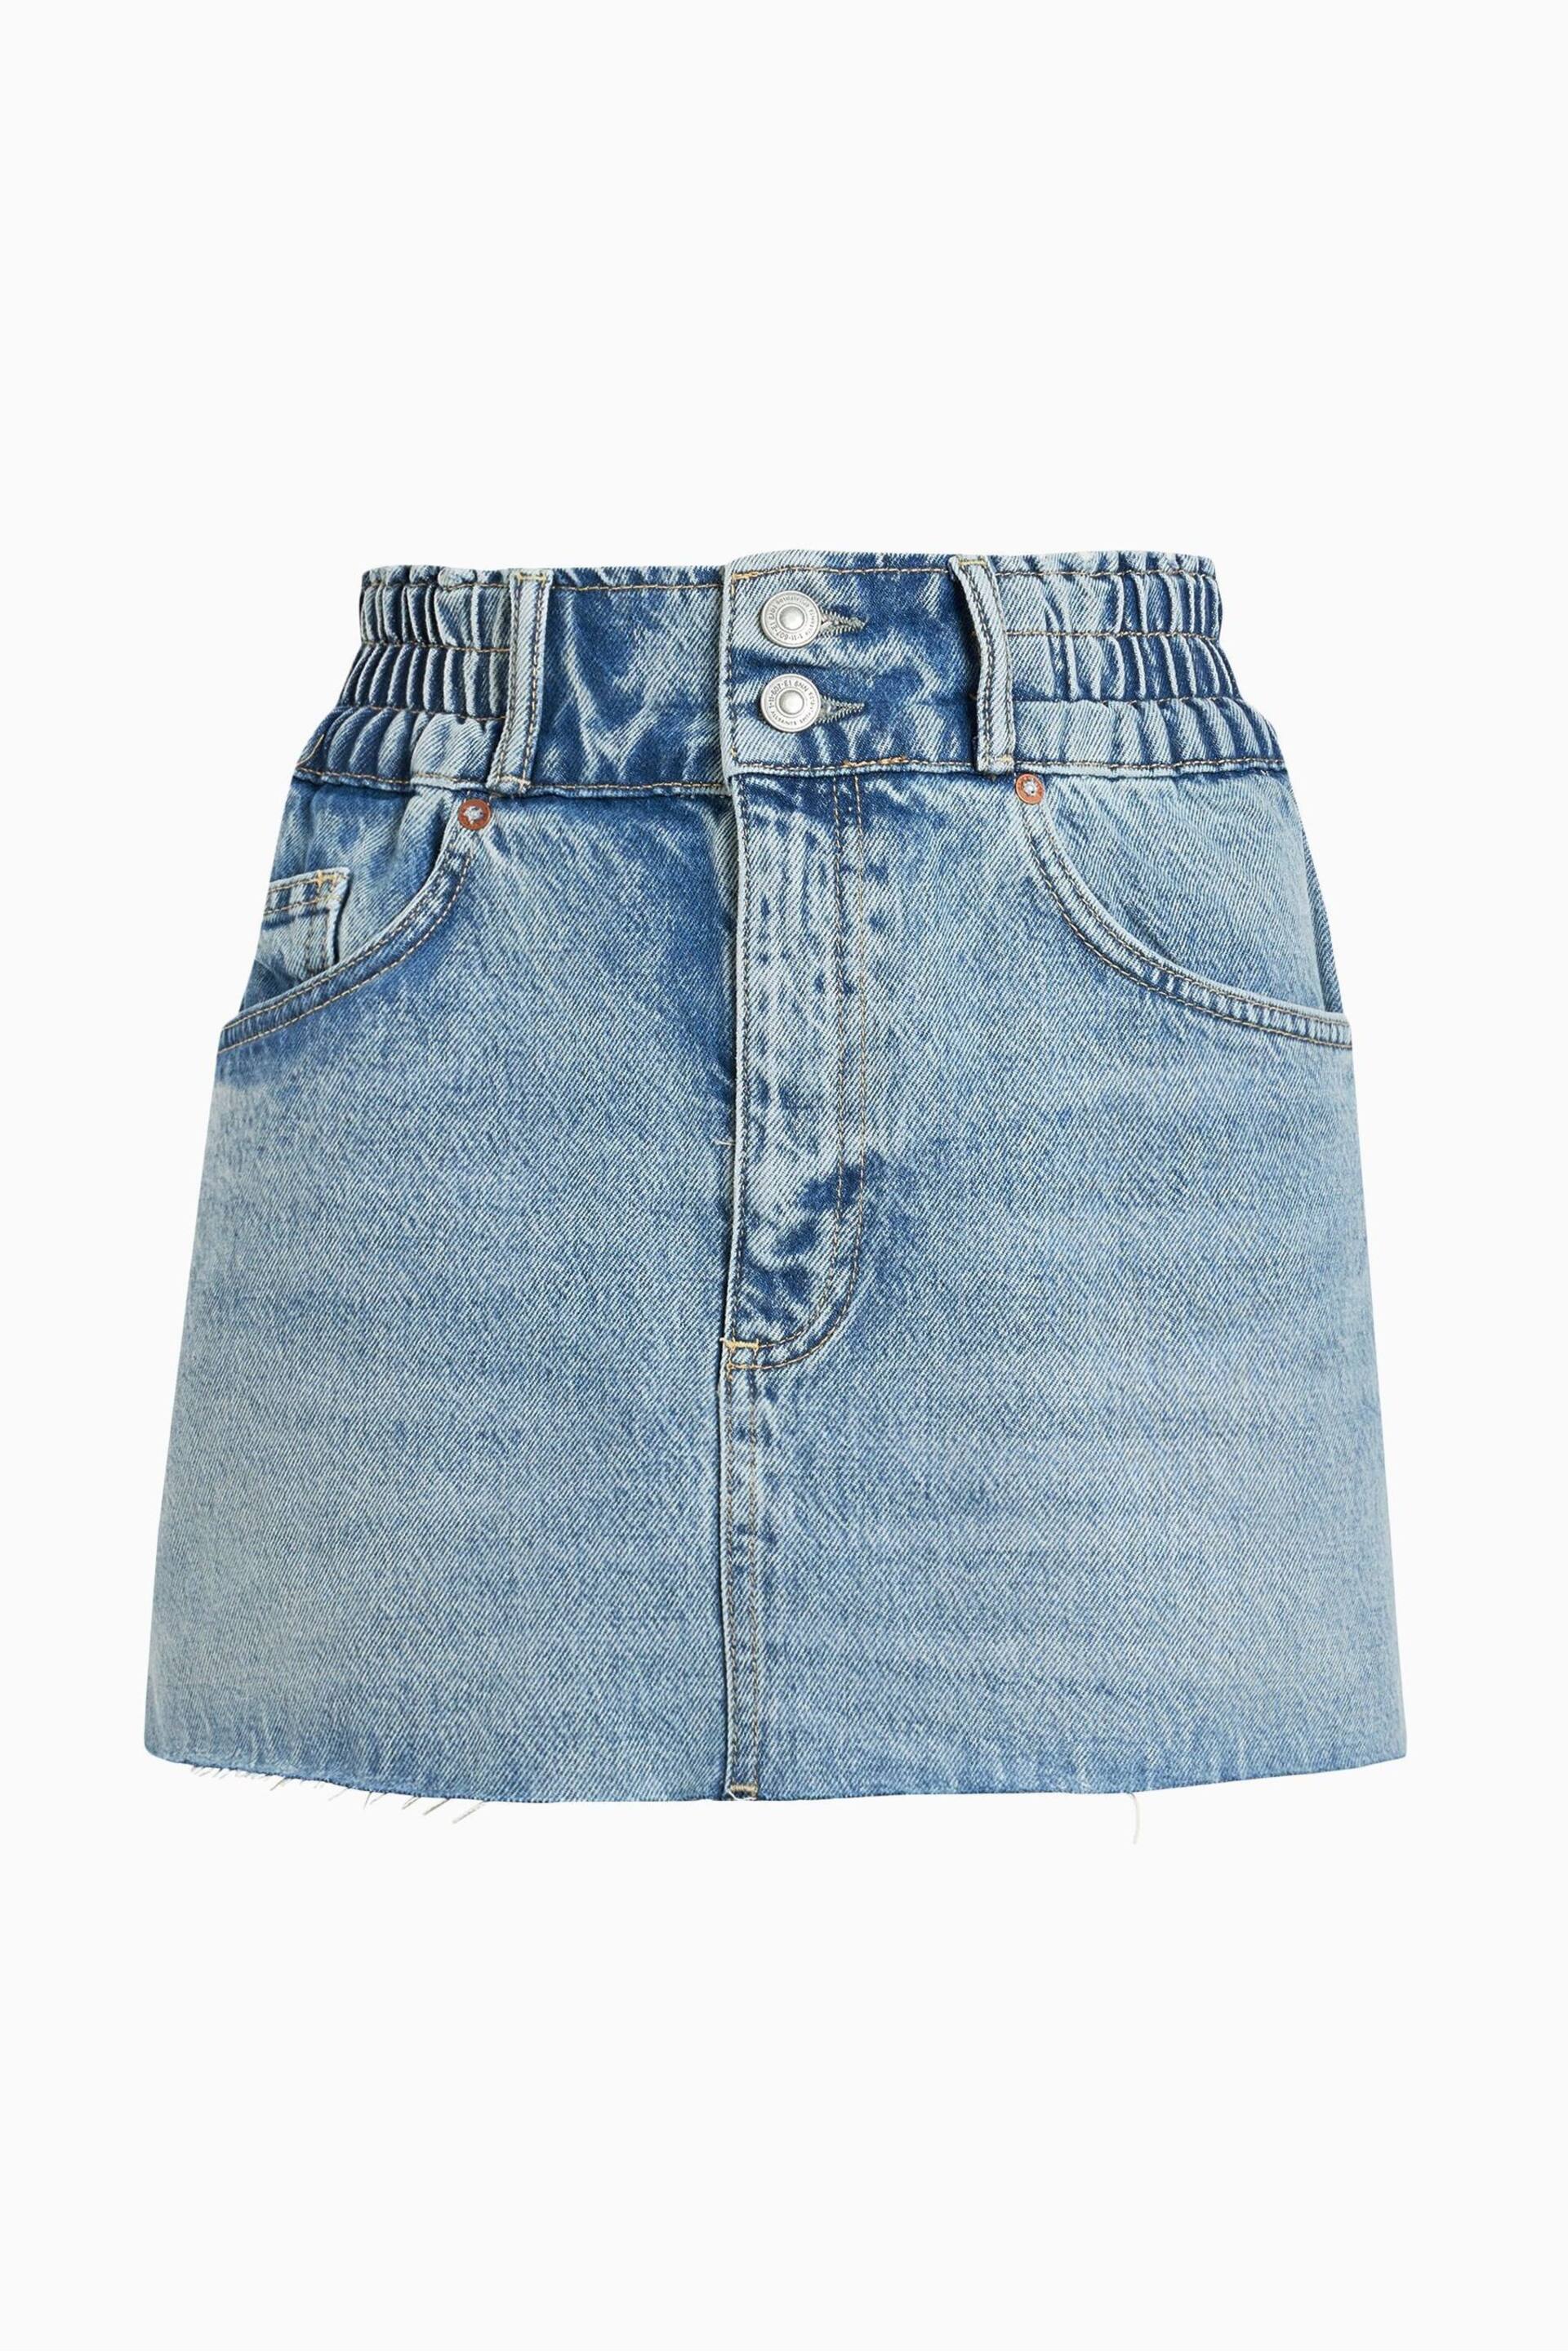 AllSaints Blue Hailey Mini Skirt - Image 7 of 7